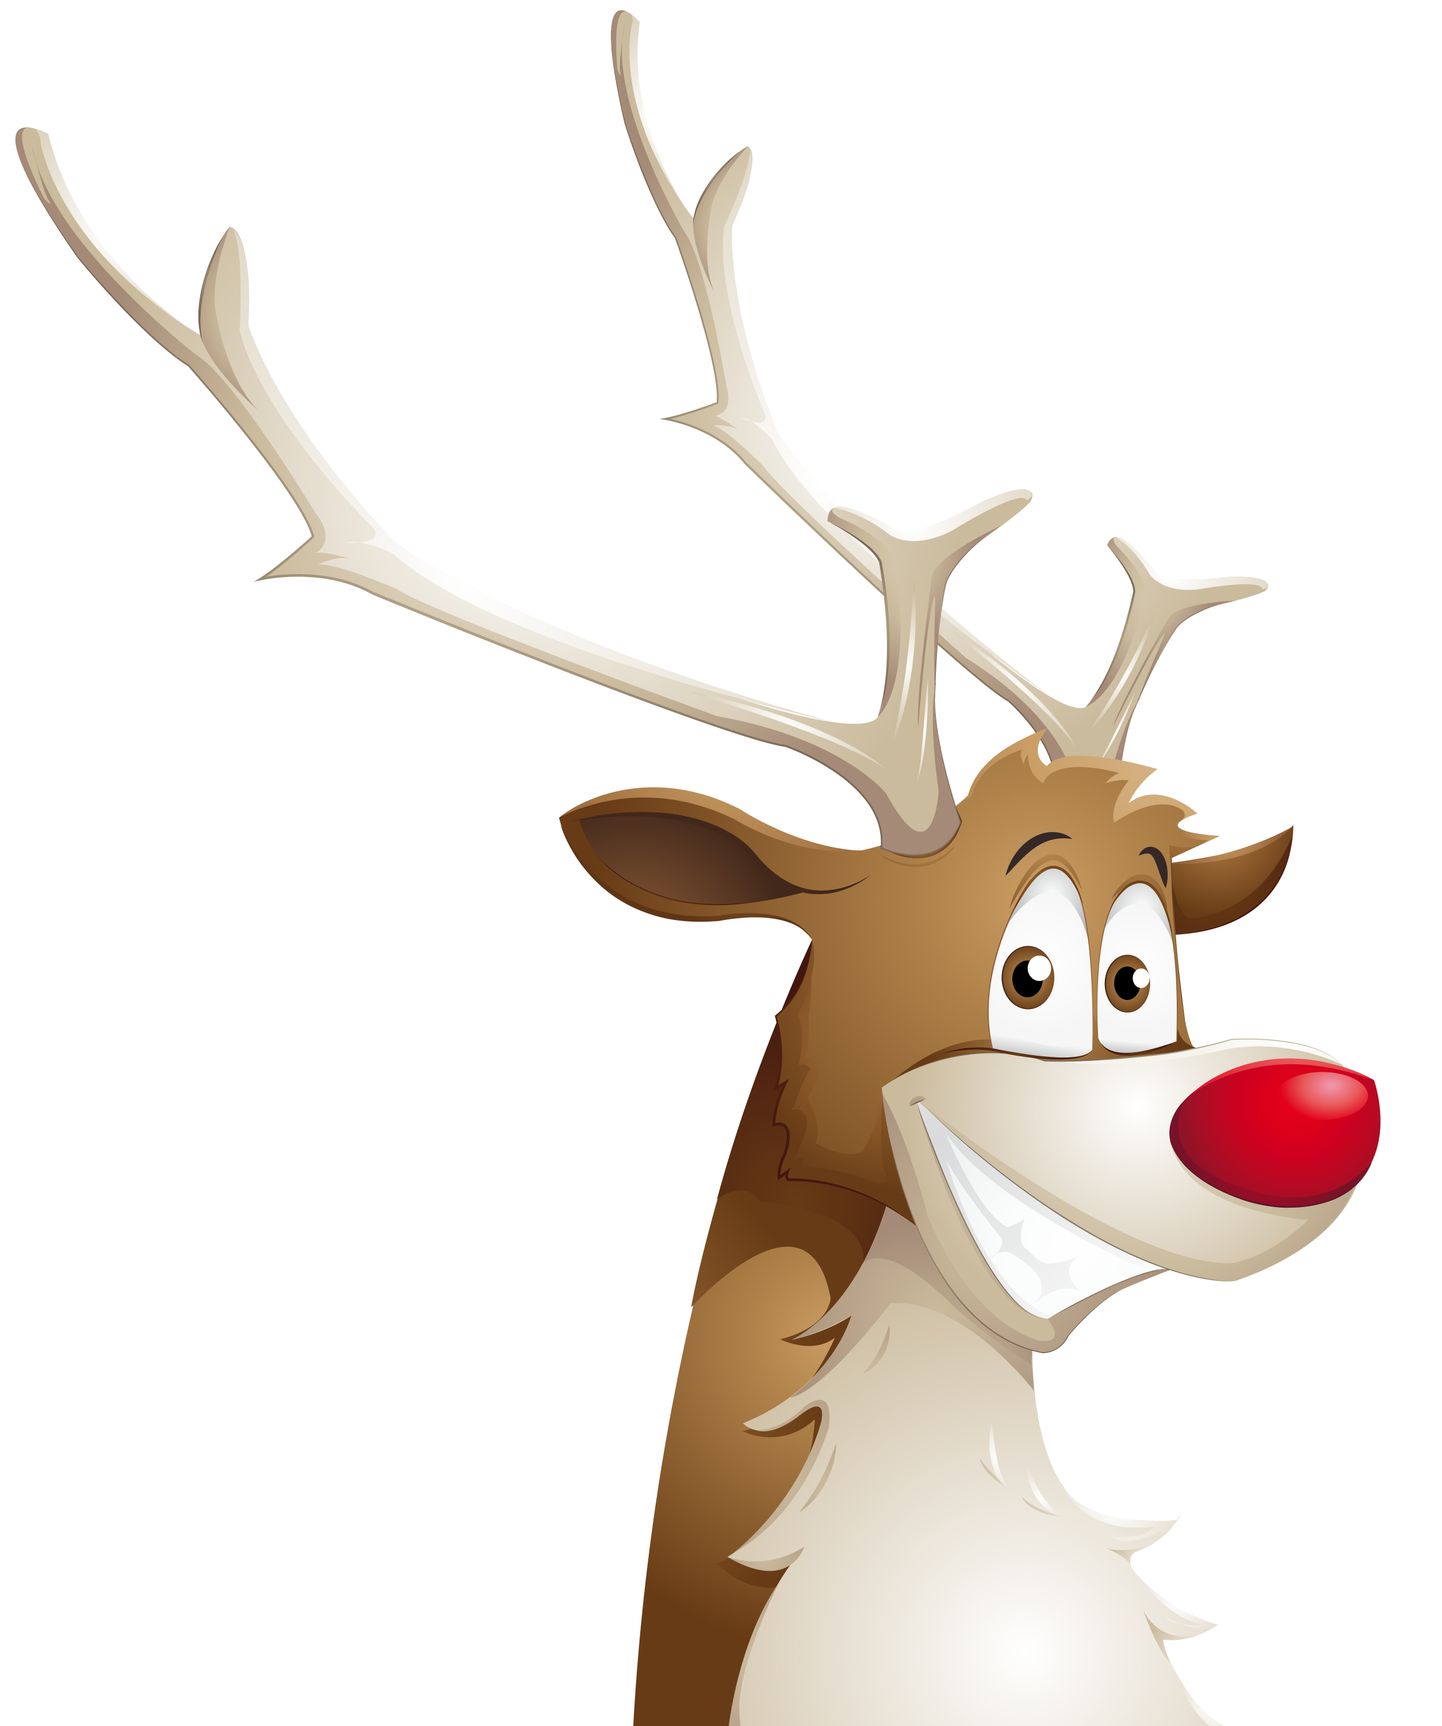 Põhjapõder Rudolph. Pilt on illustreeriv